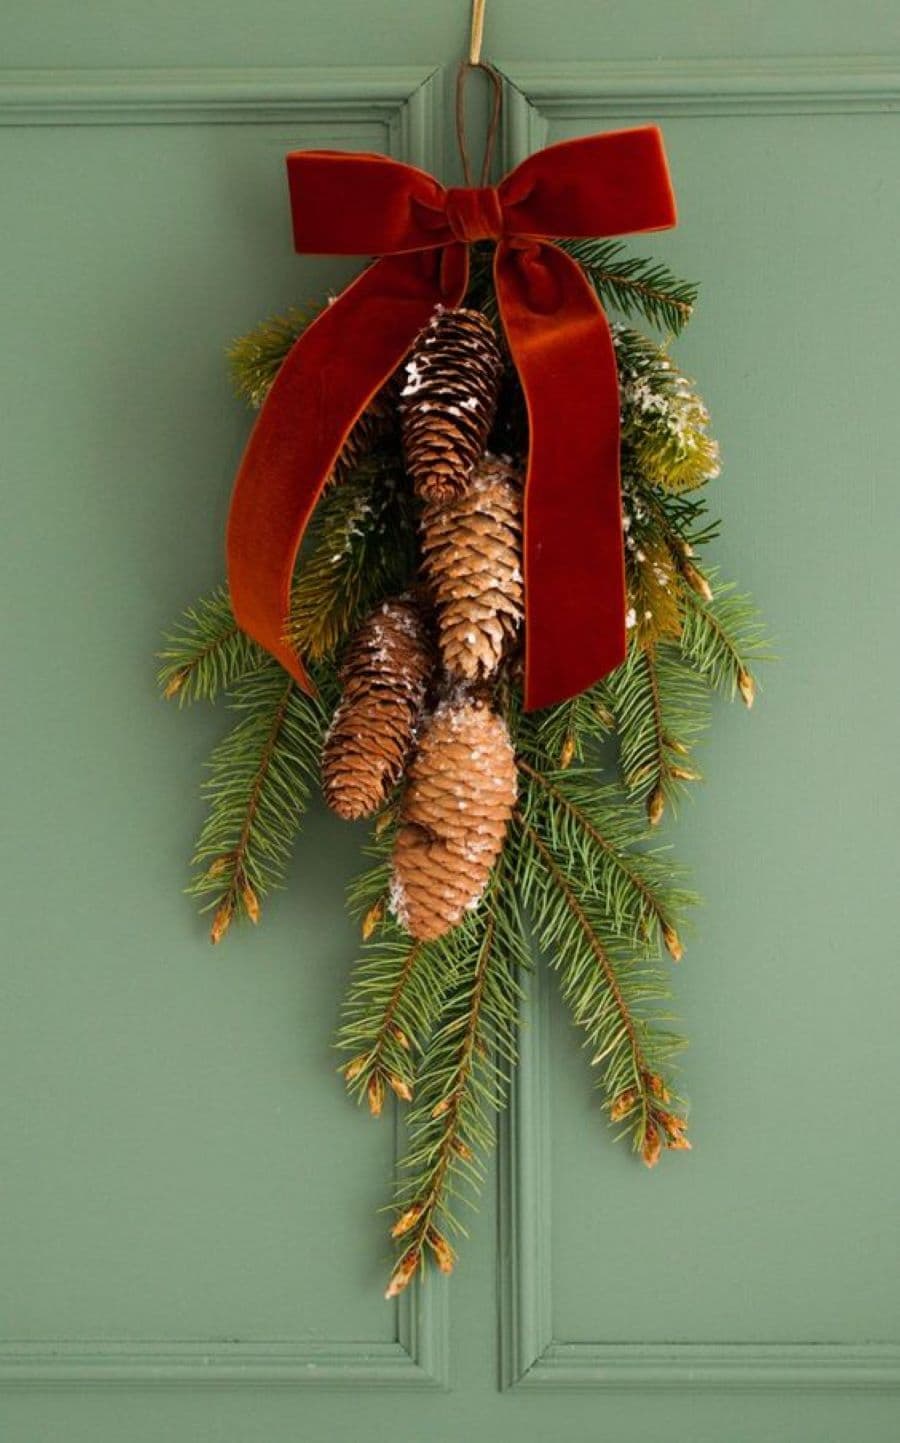 Detalle de una puerta de madera verde, con un adorno navideño hecho con ramas de pino, semillas de pino y una cinta de terciopelo roja.